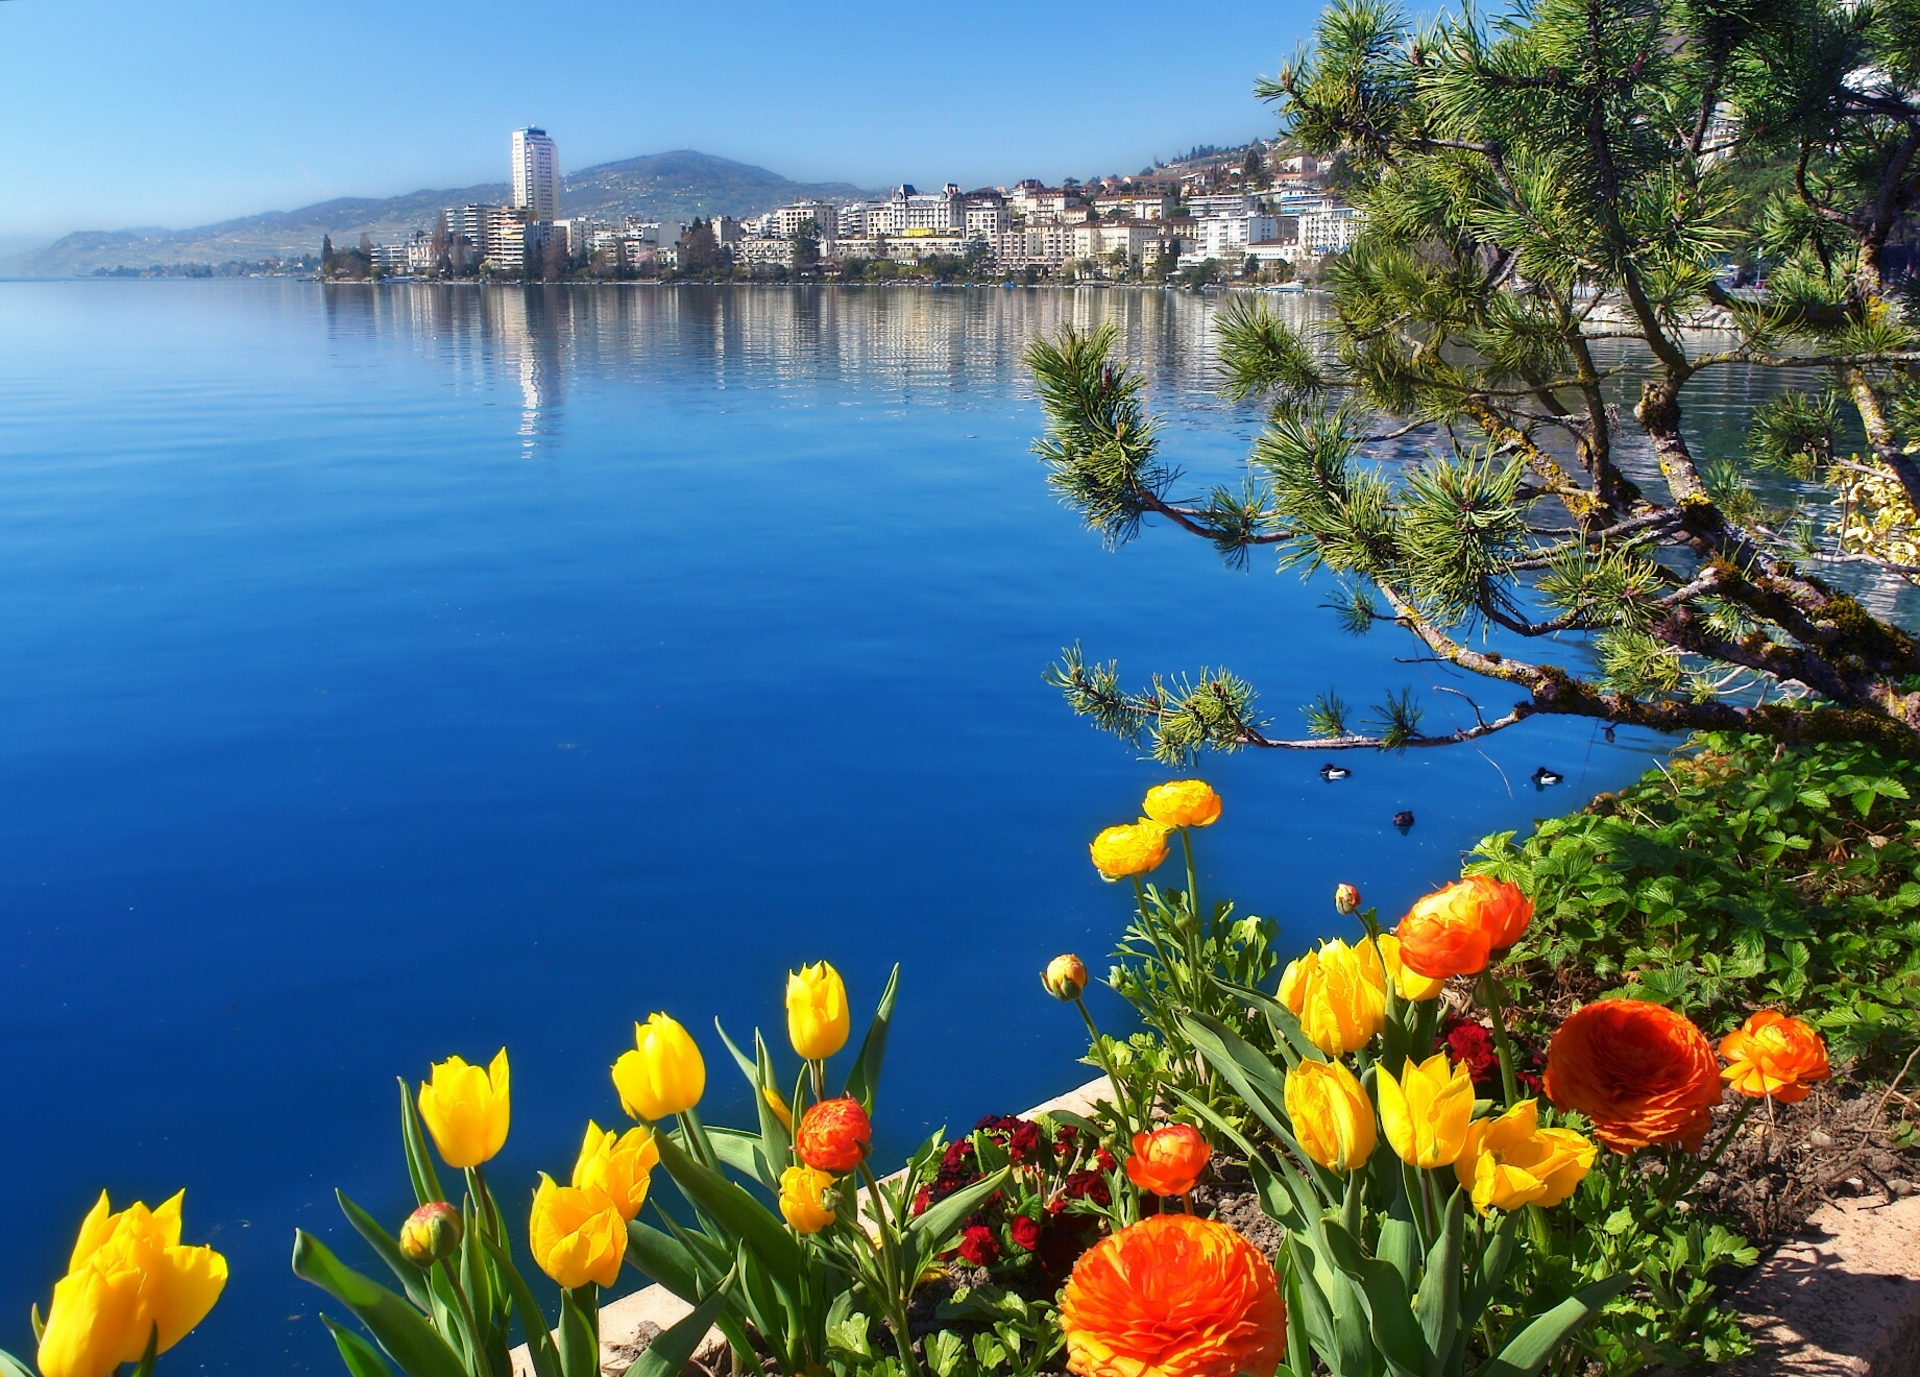 Скачать обои Женевское Озеро на телефон бесплатно